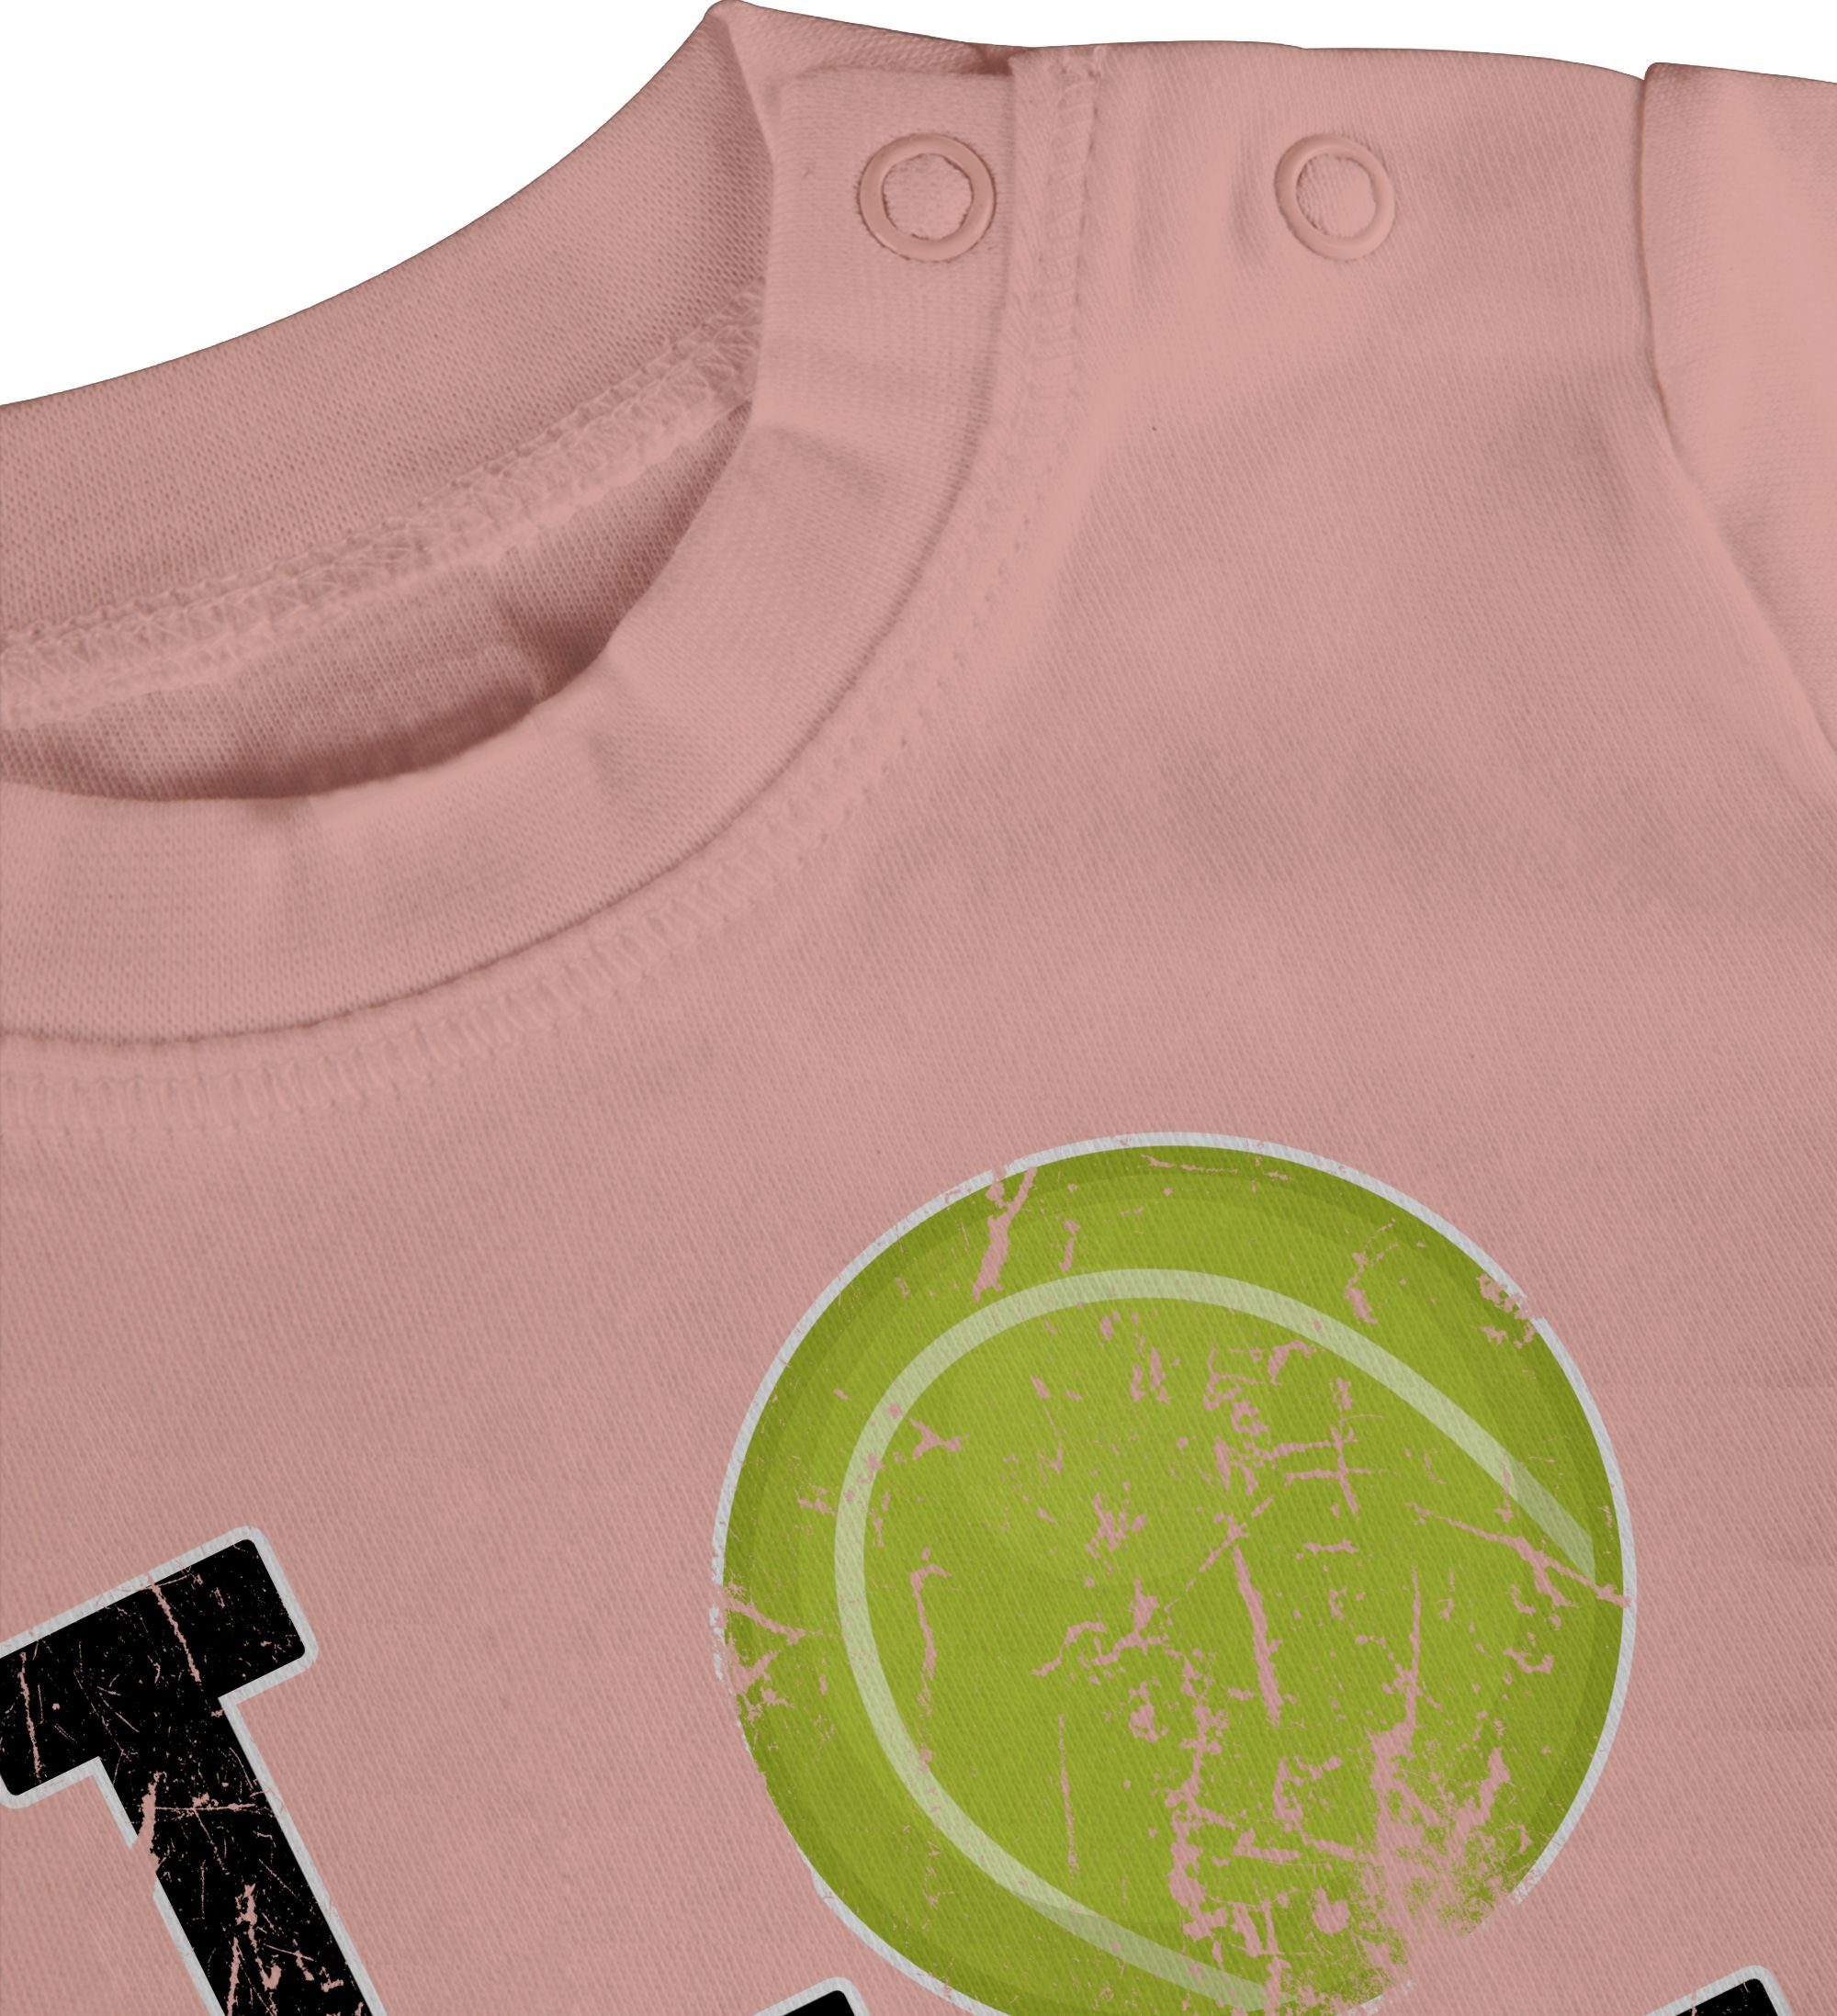 Shirtracer T-Shirt Love Tennis Babyrosa & Sport Baby Bewegung 3